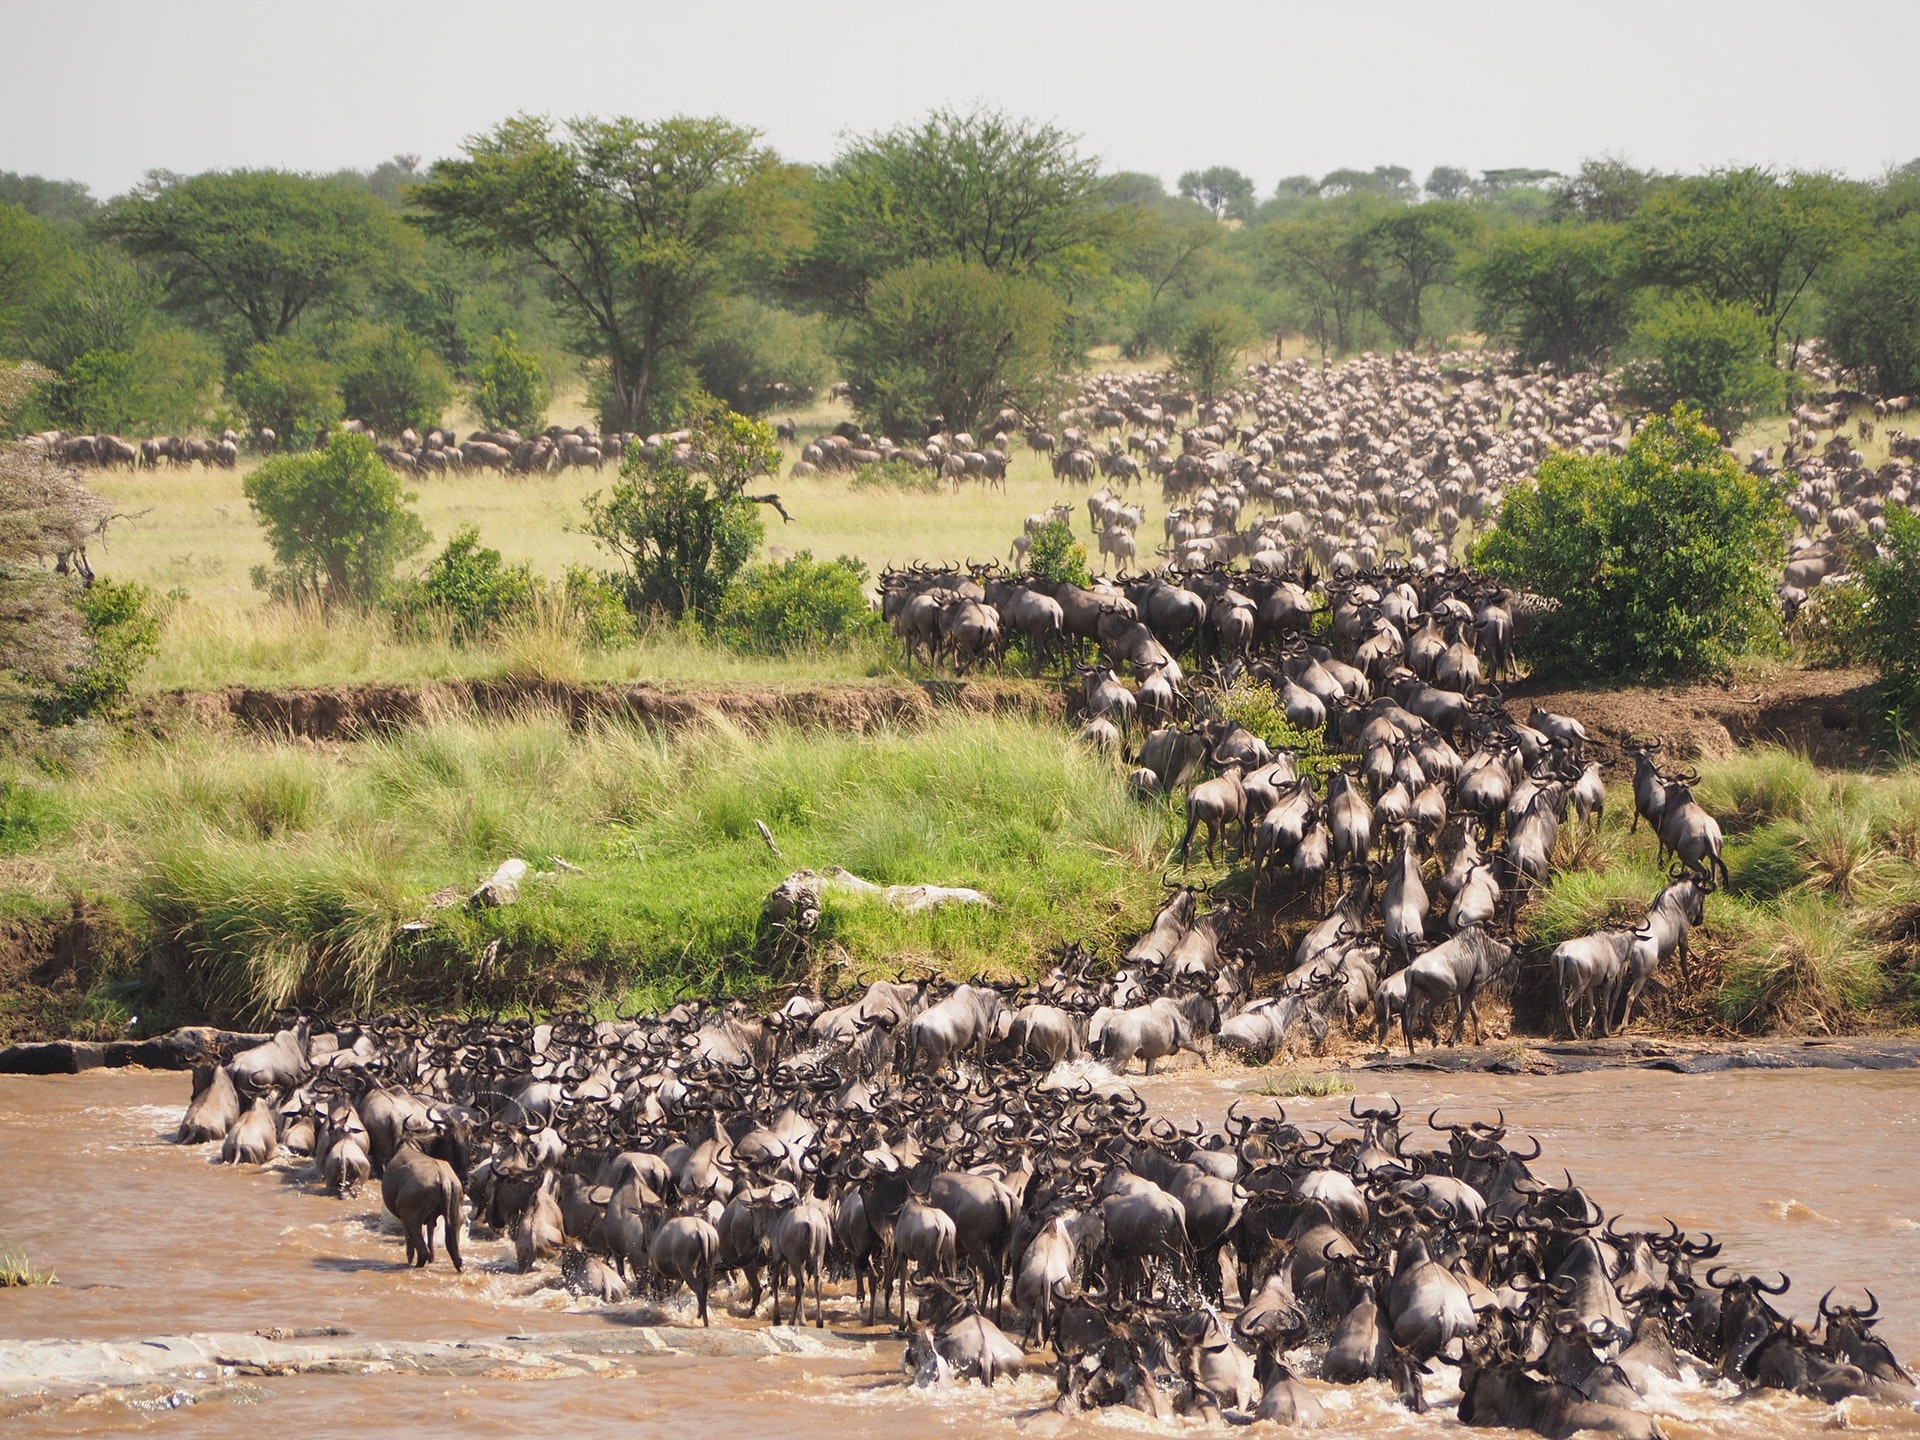 Gracias a estos expertos en carbono de pezuña hendida, el Serengeti absorbe ahora 8 millones de toneladas adicionales de carbono al año. Imagen: La gran migración de ñus cruzando el río Mara en el Parque Nacional del Serengeti - Tanzania.